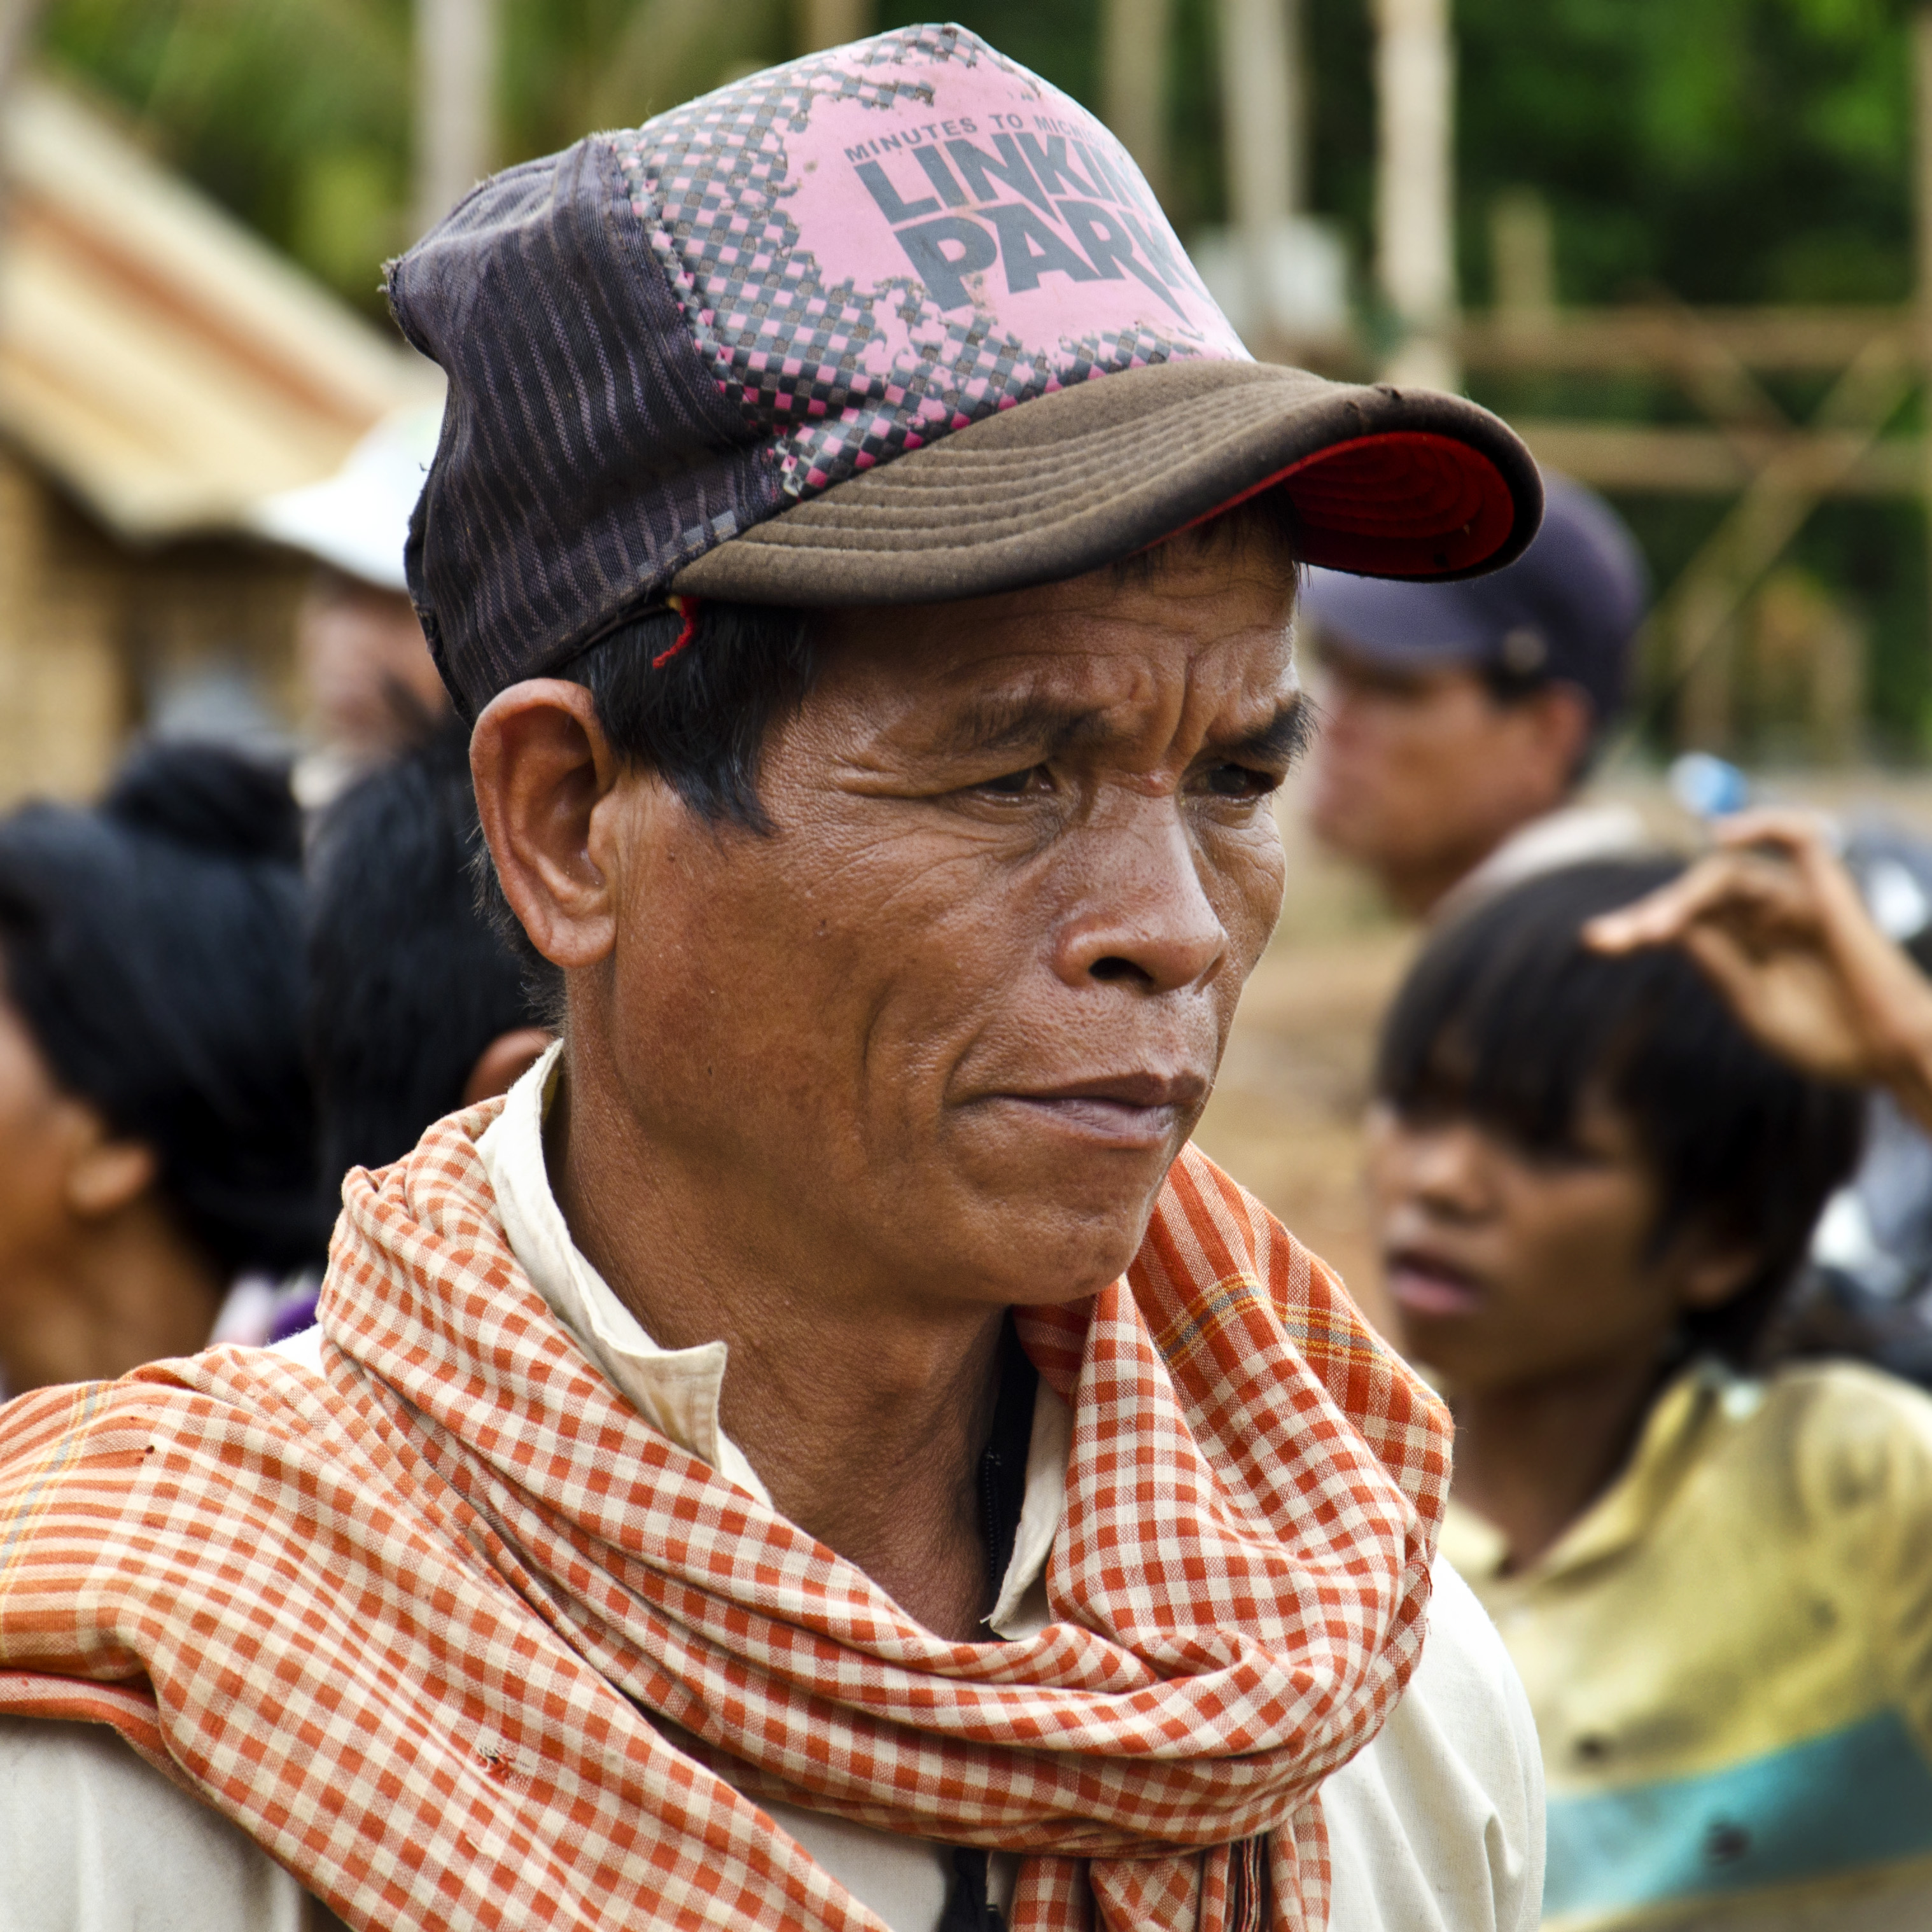 indigenous krung hilltribe man wearing a linkin park hat